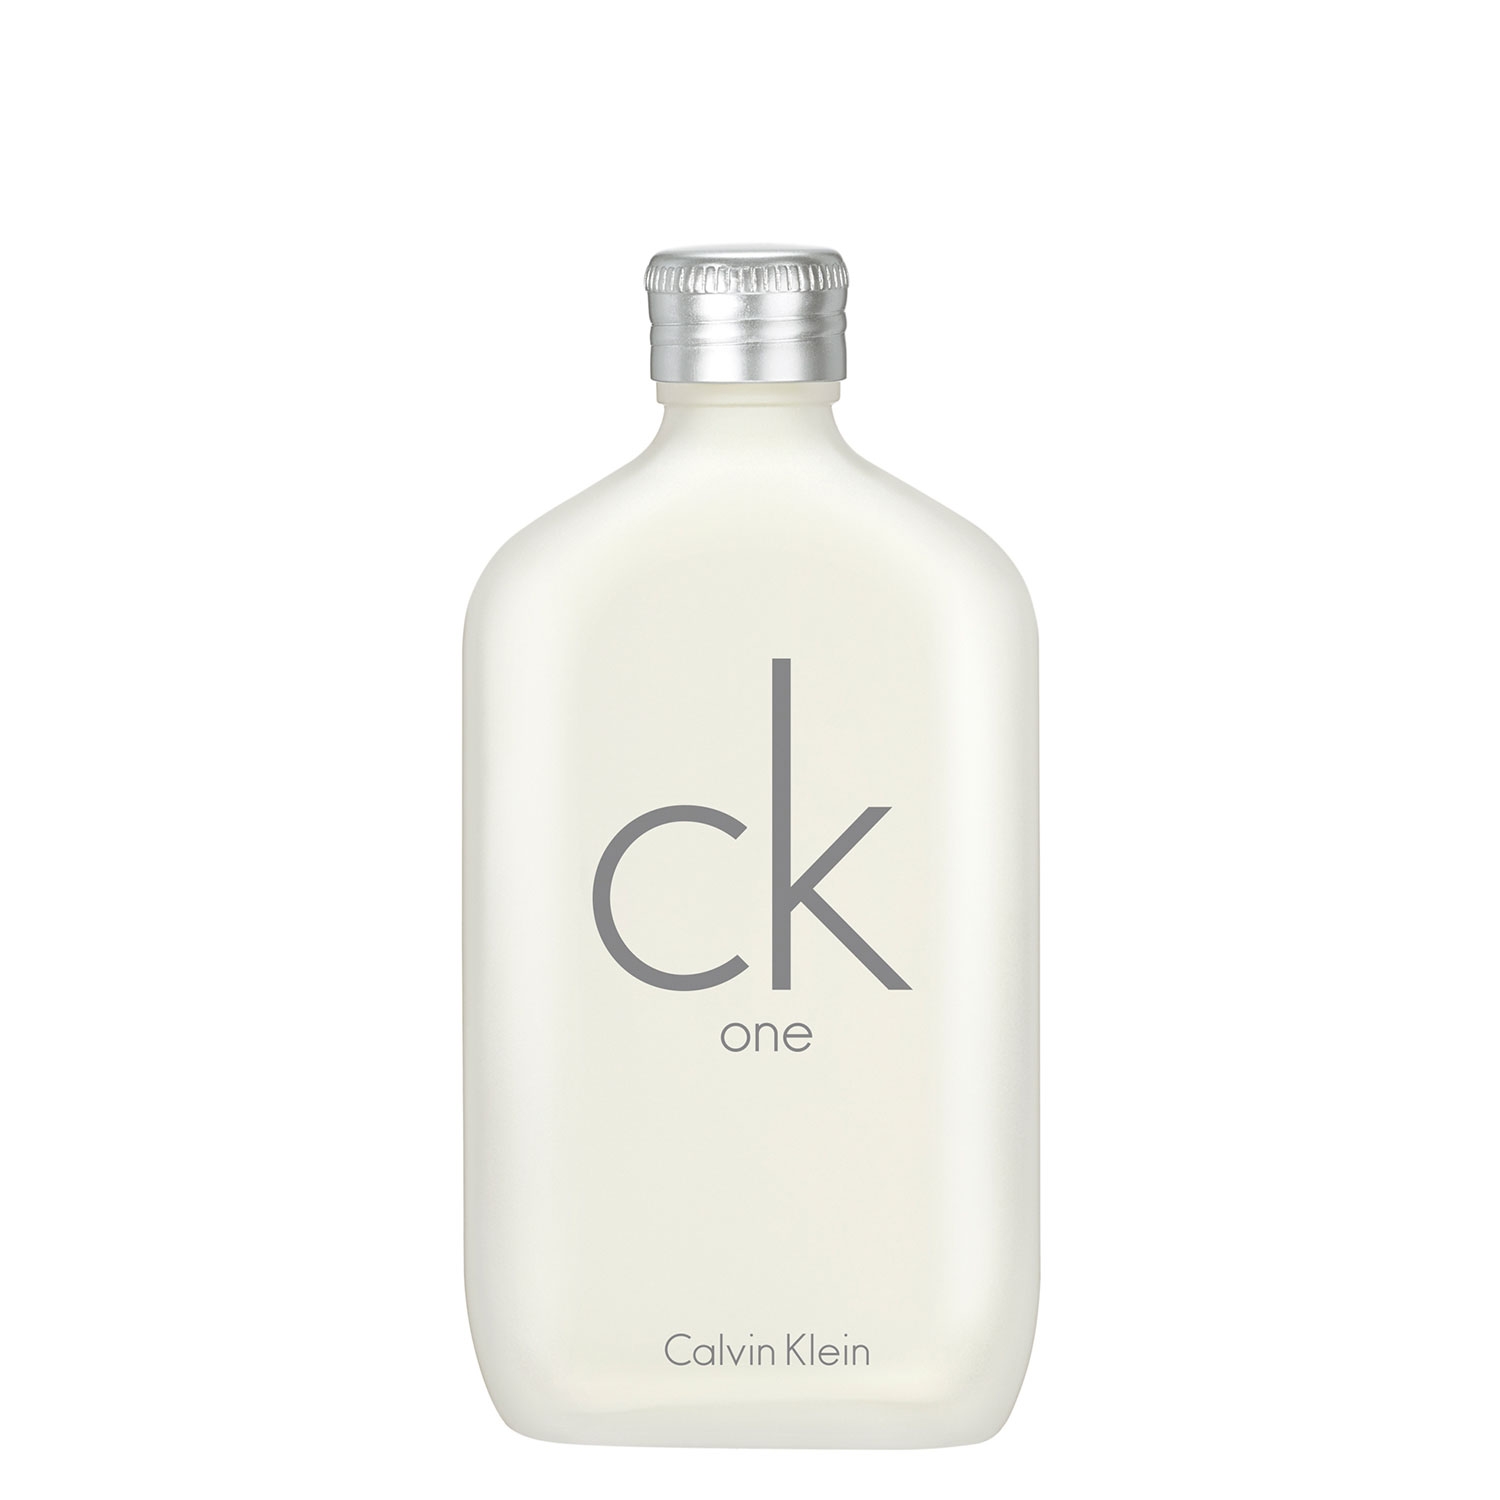 Product image from CK One - Eau de Toilette